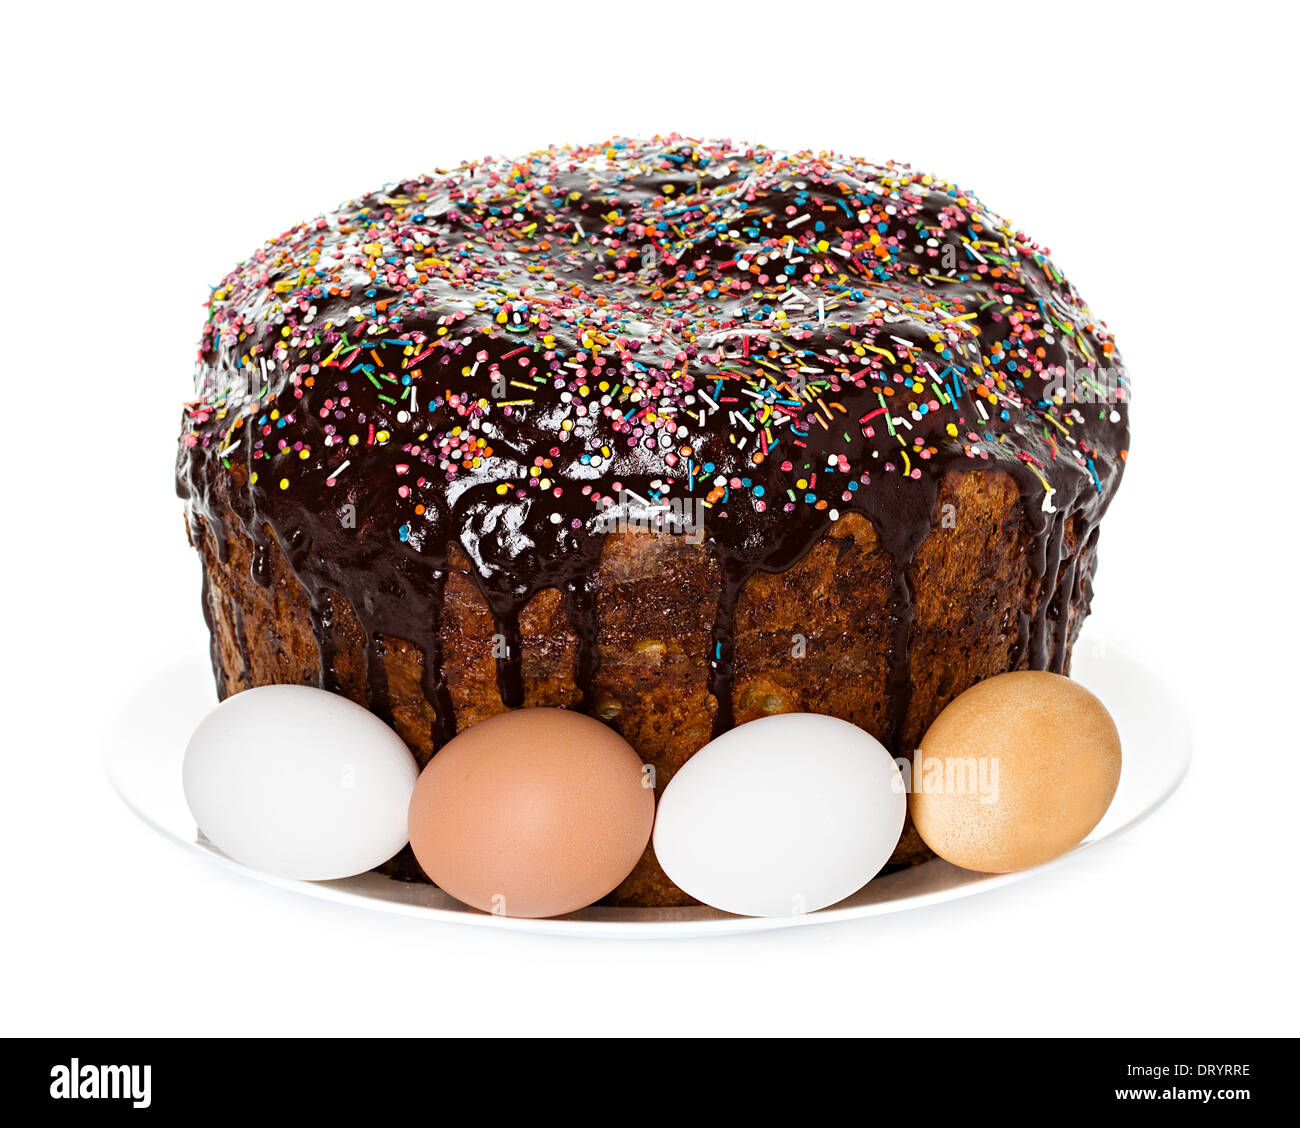 Torta di Pasqua con glace glassa e uova di pasqua su sfondo bianco Foto Stock